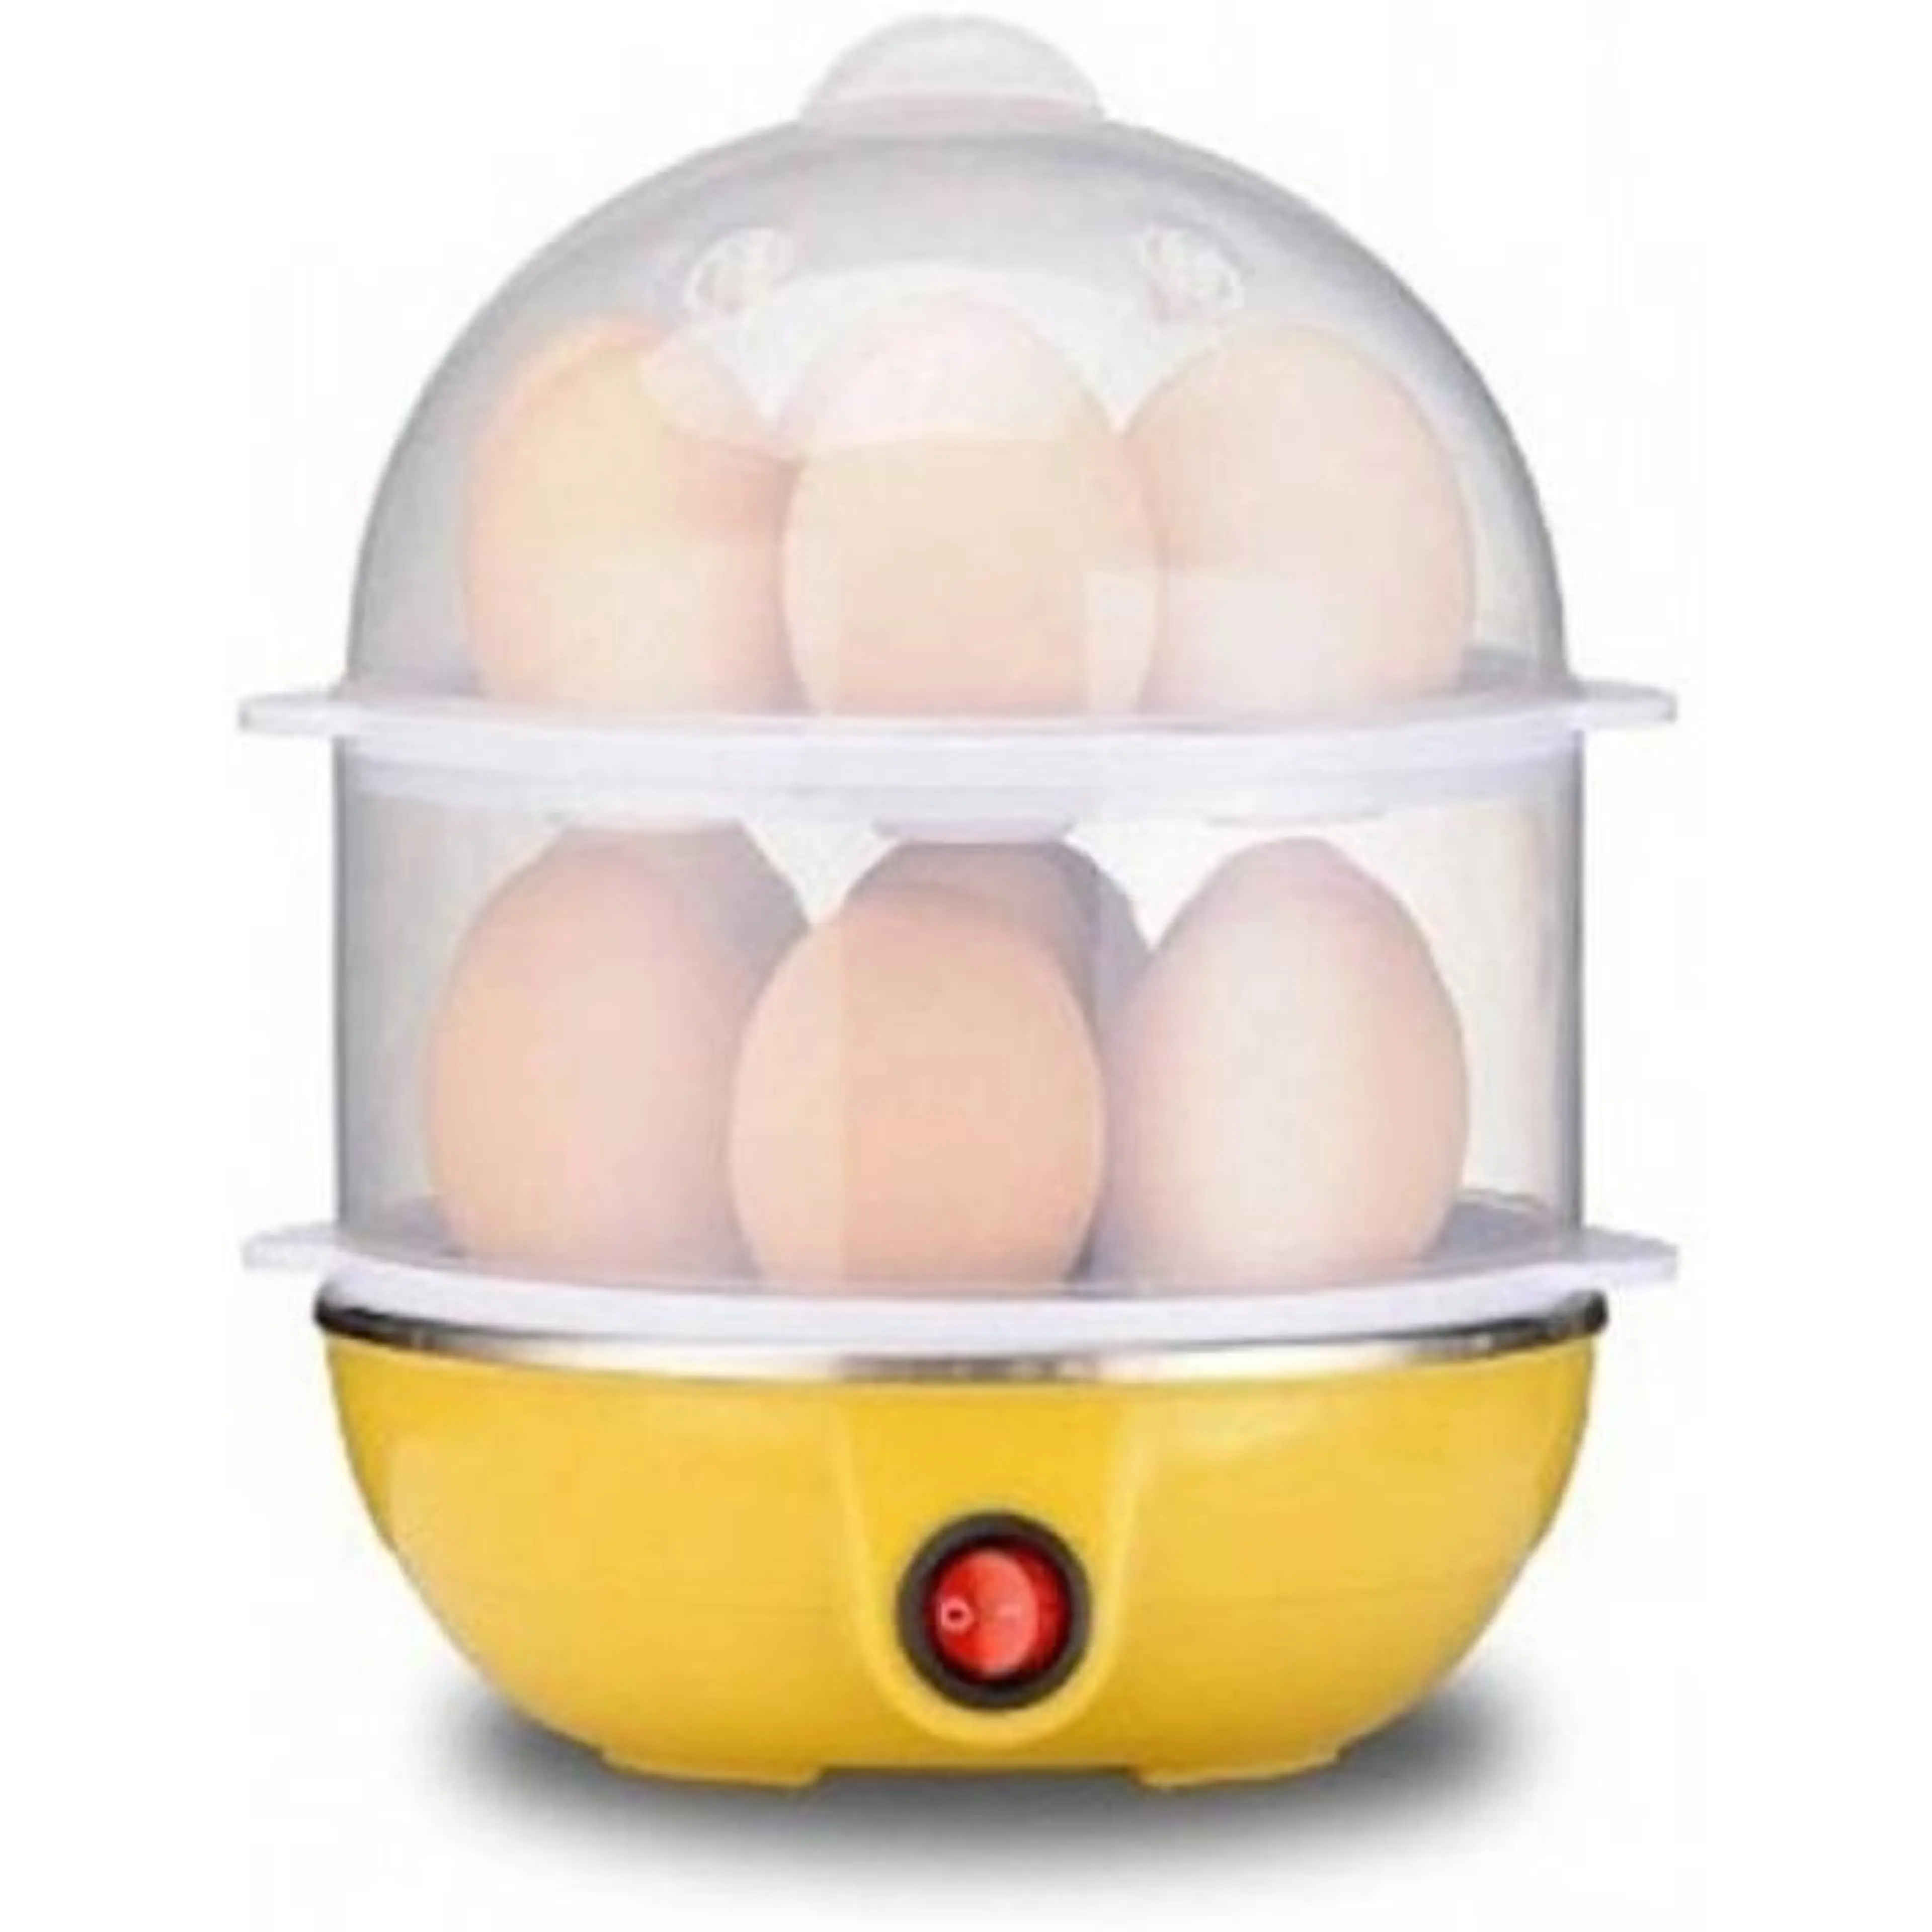 Яйцеварка, Уред за готвене на пара, за 14 яйца